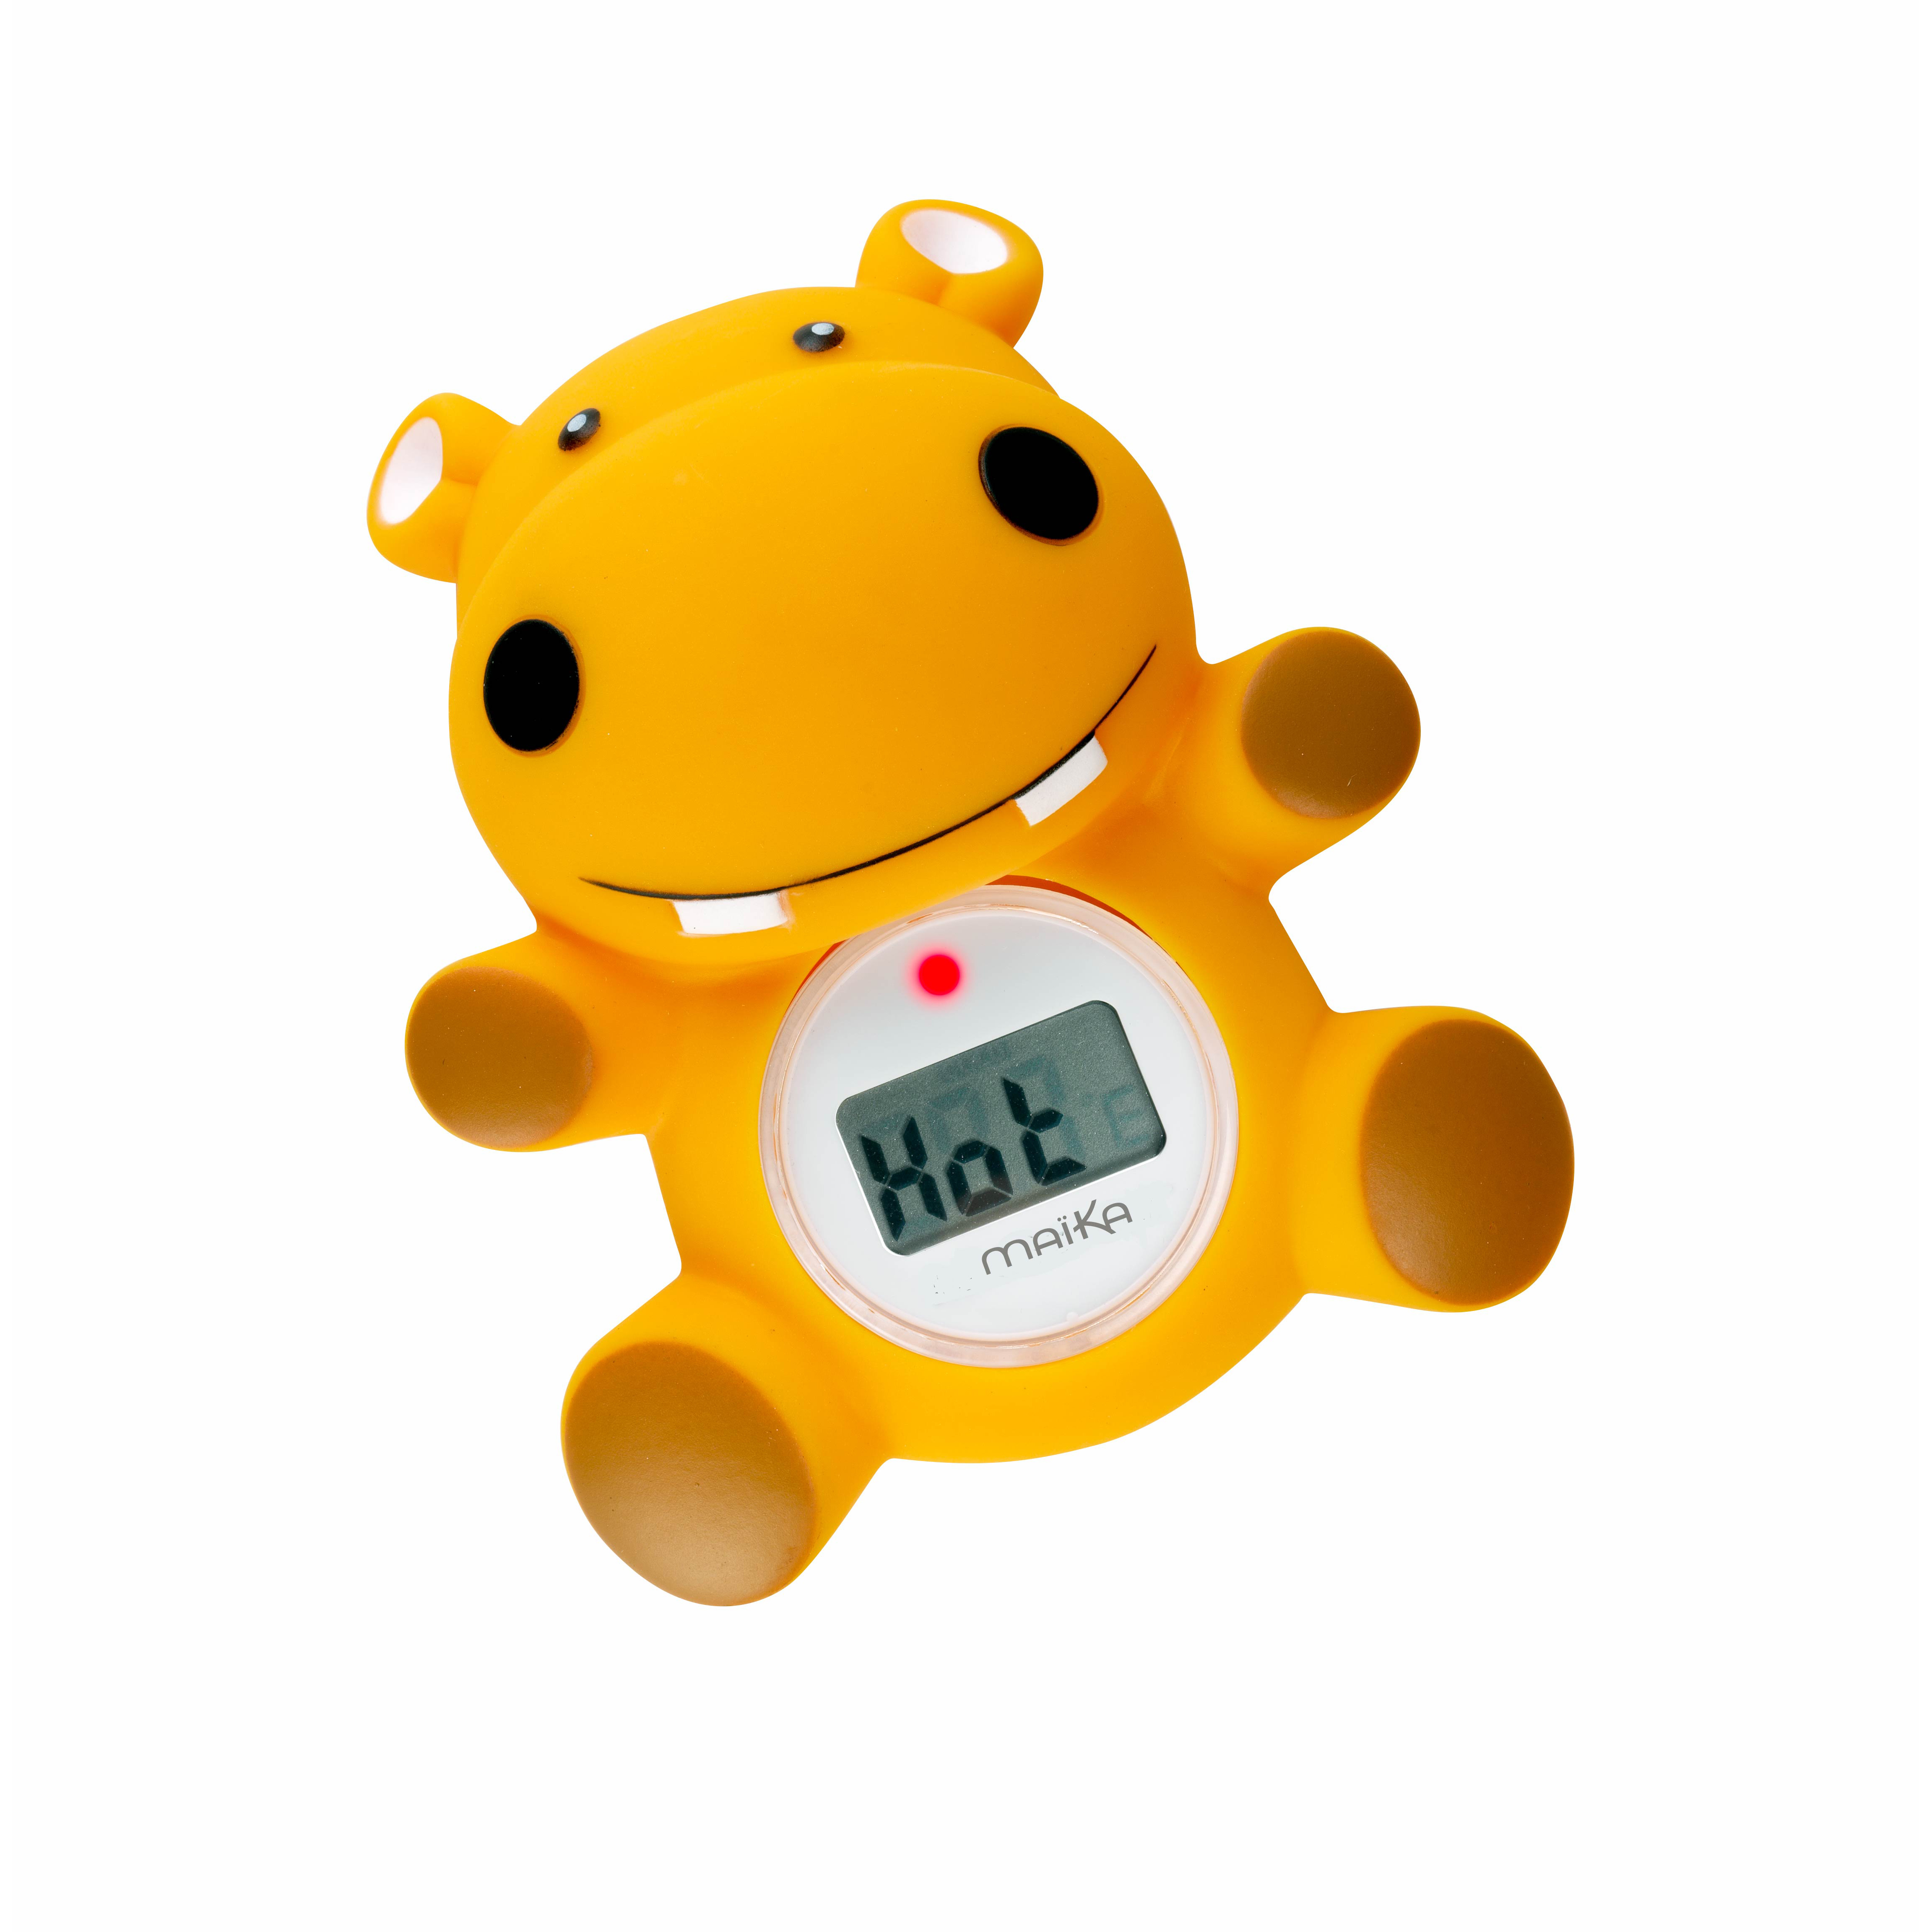 Thermomètre de bain Hippo de Maïka, Maïka : Aubert